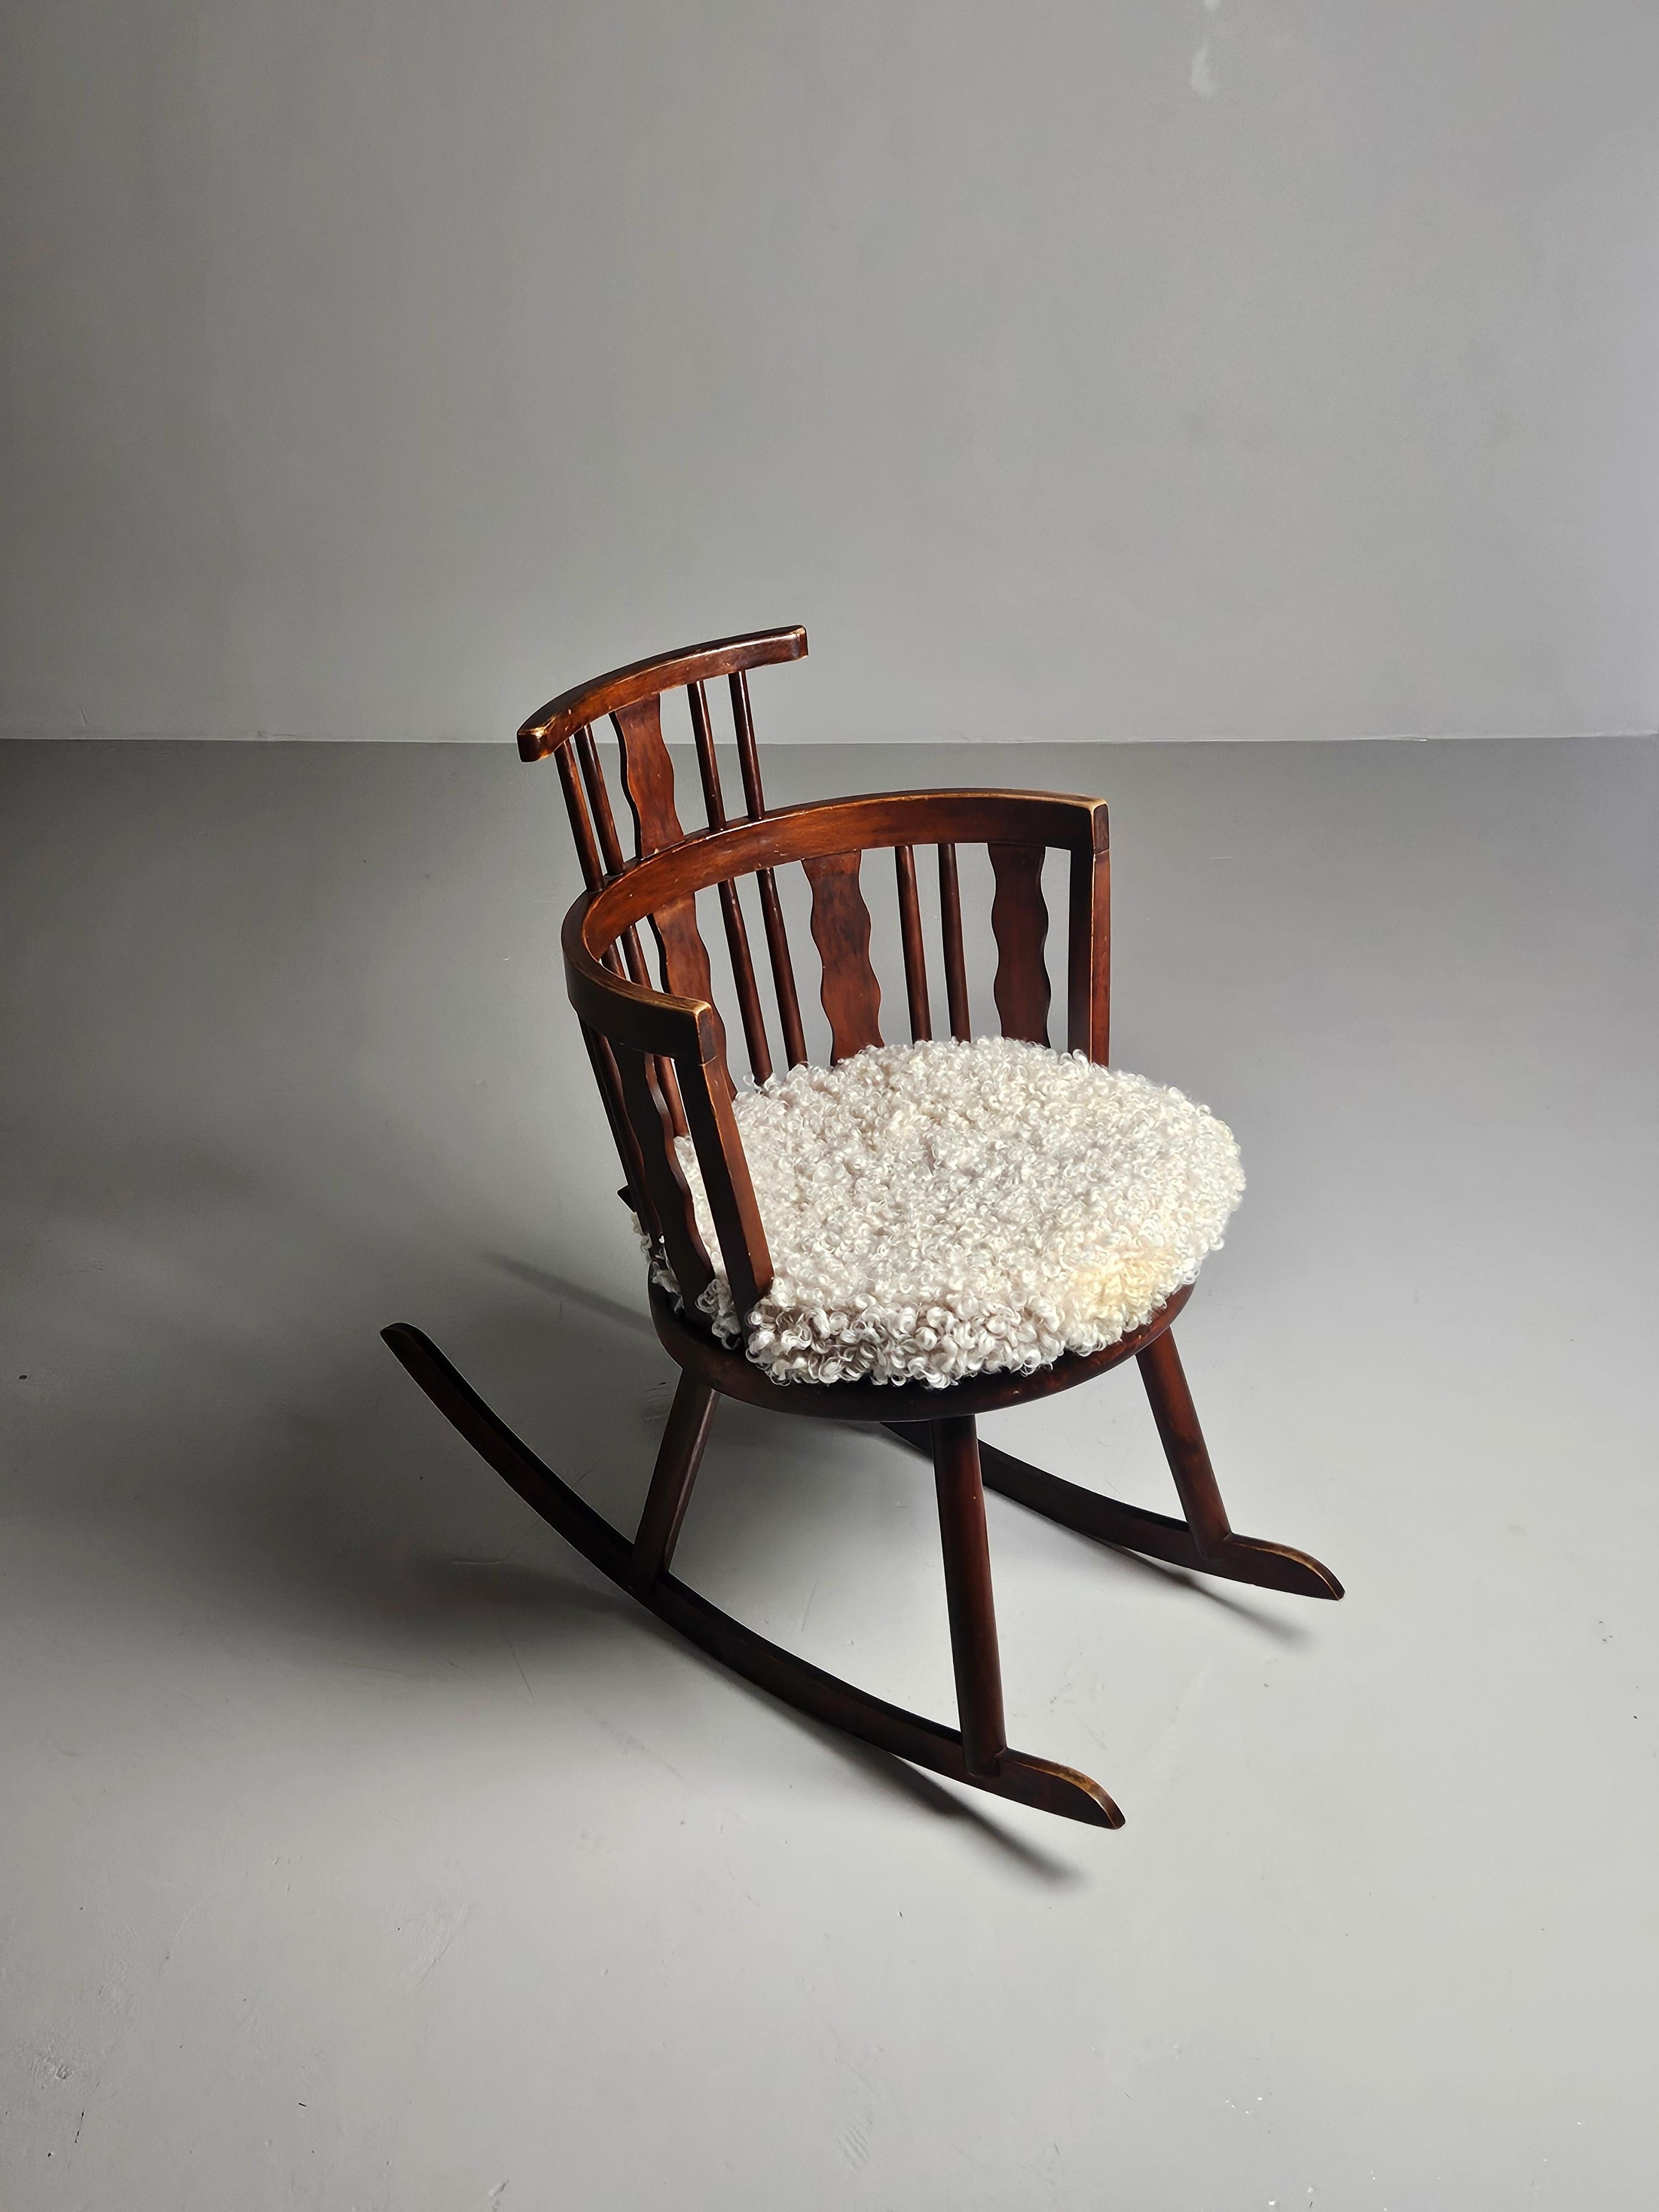 Rare fauteuil à bascule conçu par Torsten Claeson, l'un des designers de Steneby Hemslöjd au milieu du XXe siècle. 

Coussin souple en peau de mouton de haute qualité. 

S'accorde très bien avec d'autres meubles de cabine de sport suédois tels que